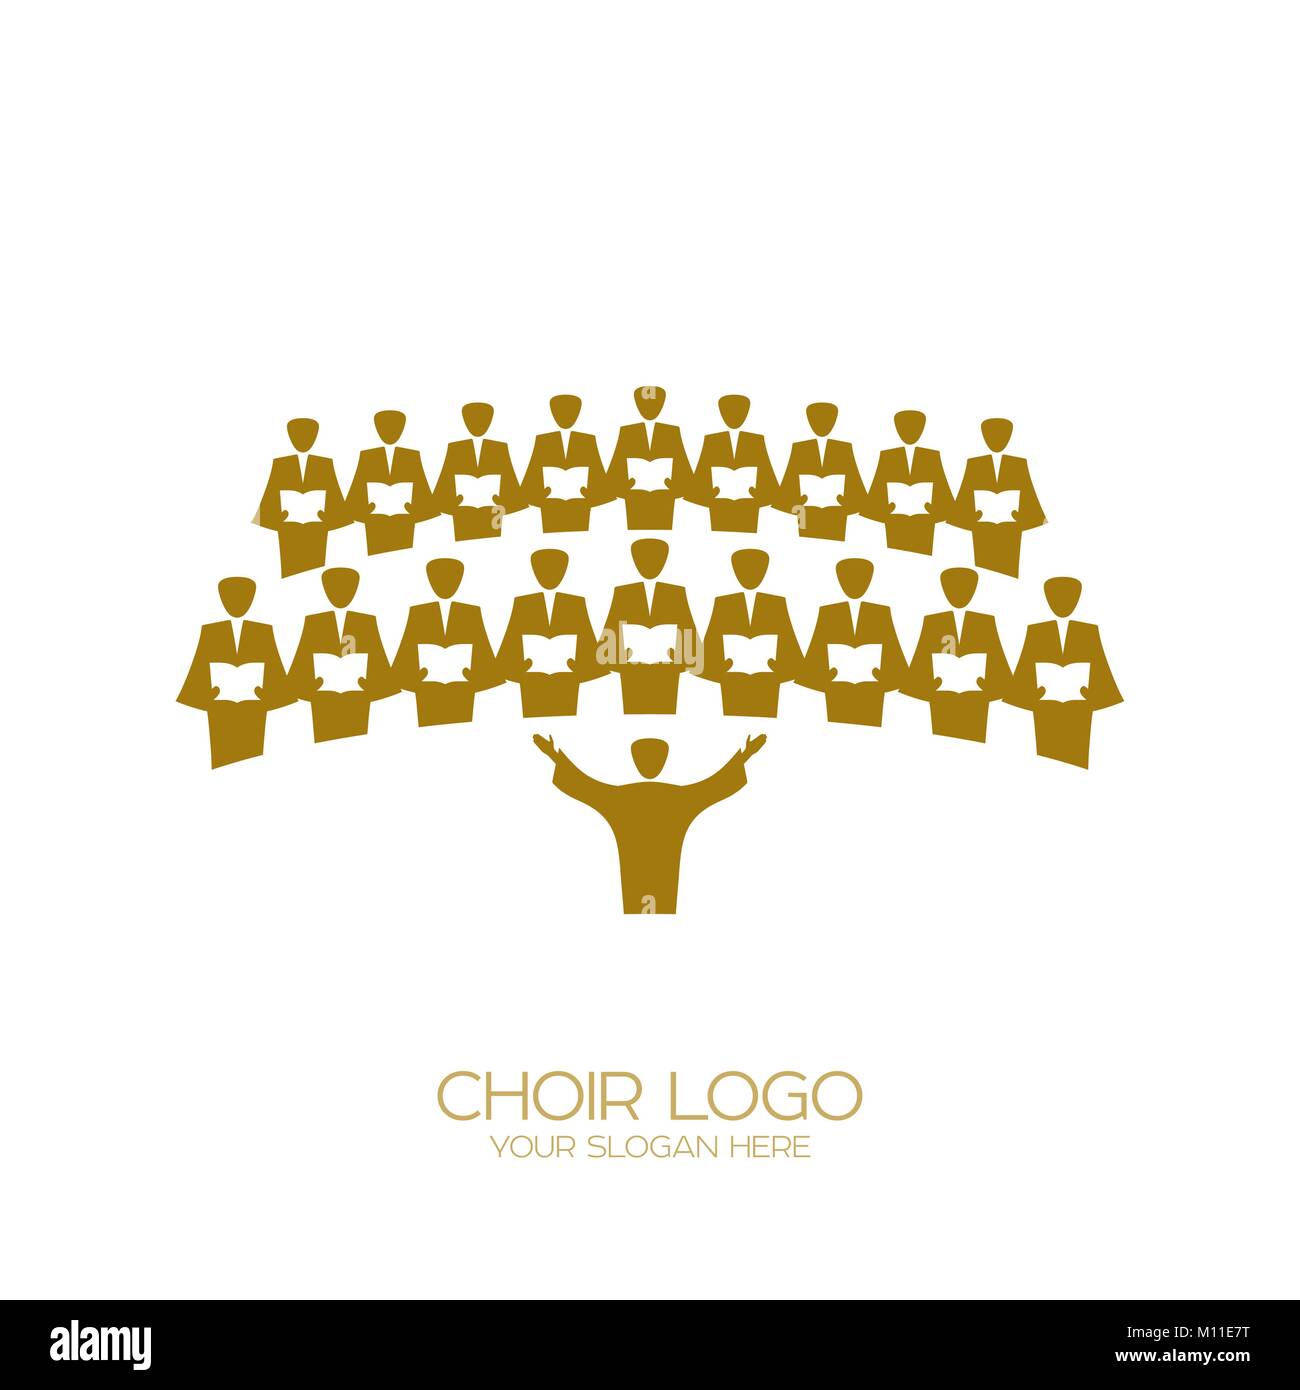 Logo de la musique. Le chant chorale Image Vectorielle Stock - Alamy